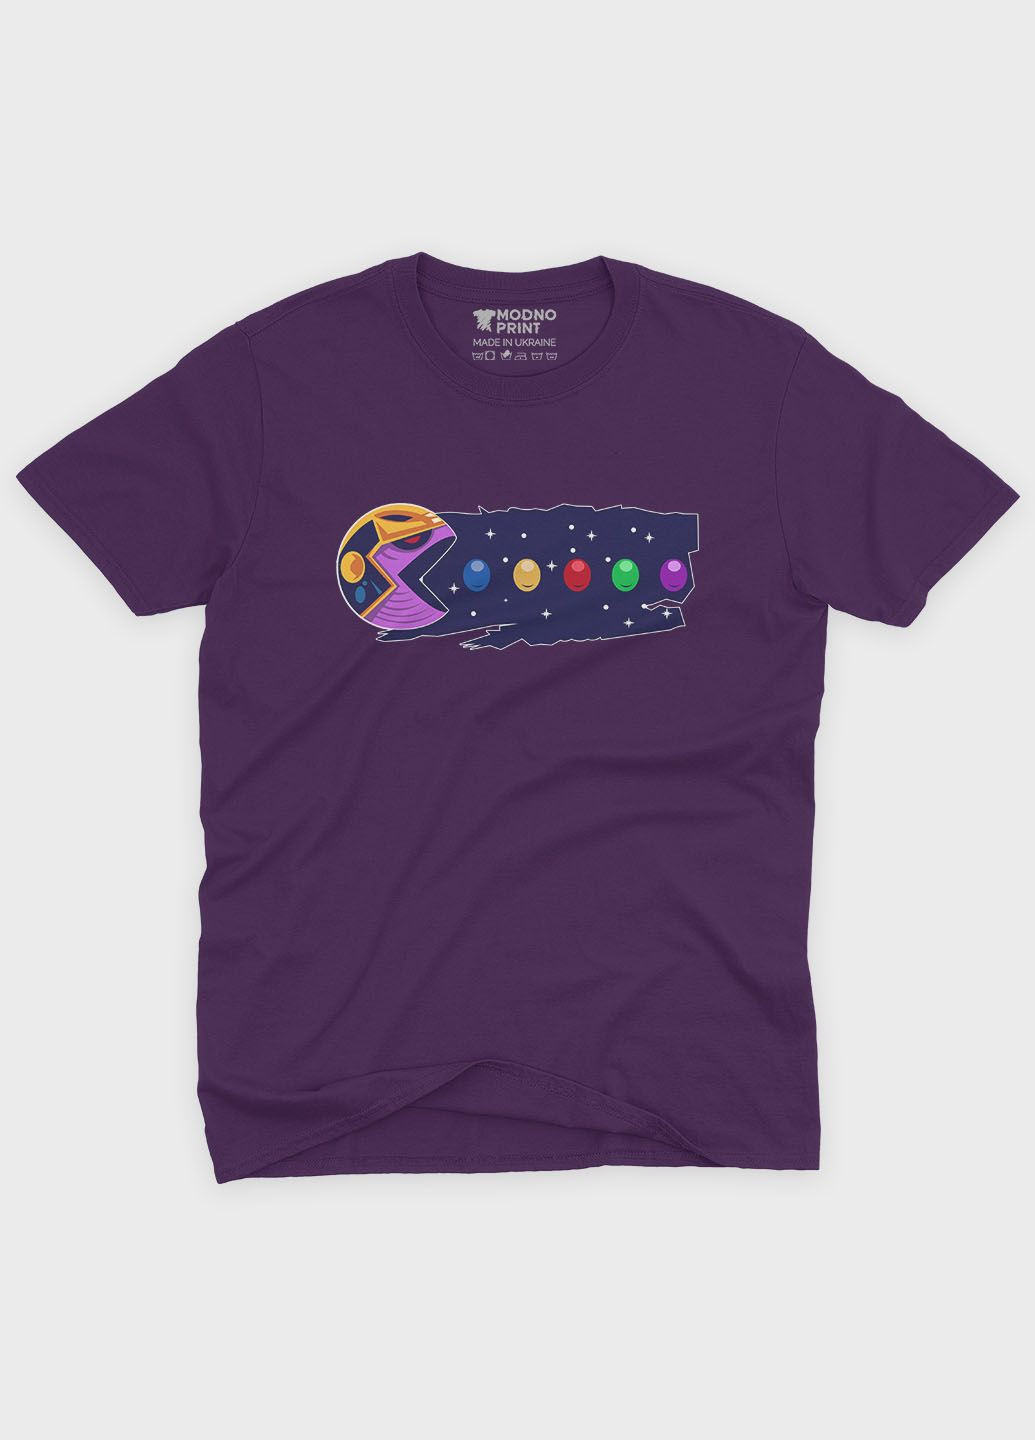 Фиолетовая демисезонная футболка для девочки с принтом супезловода - танос (ts001-1-dby-006-019-015-g) Modno